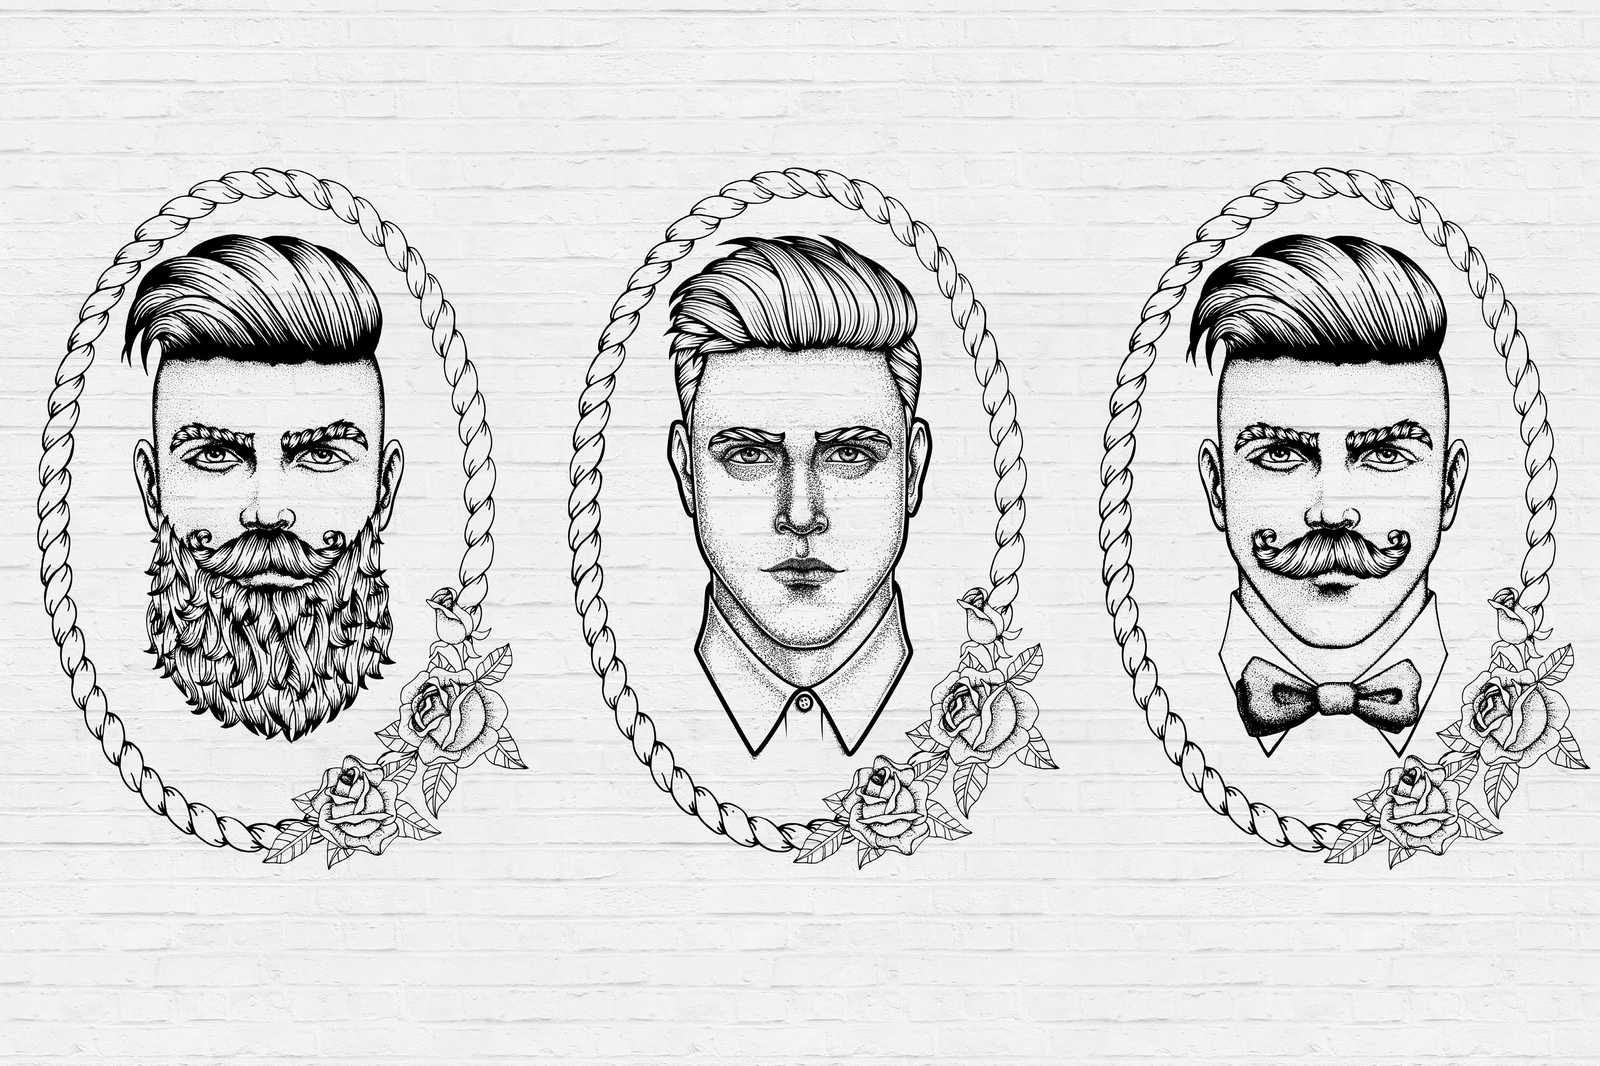             Schwarz-Weißes Leinwandbild mit Männer Portraits im Comic Stil – 0,90 m x 0,60 m
        